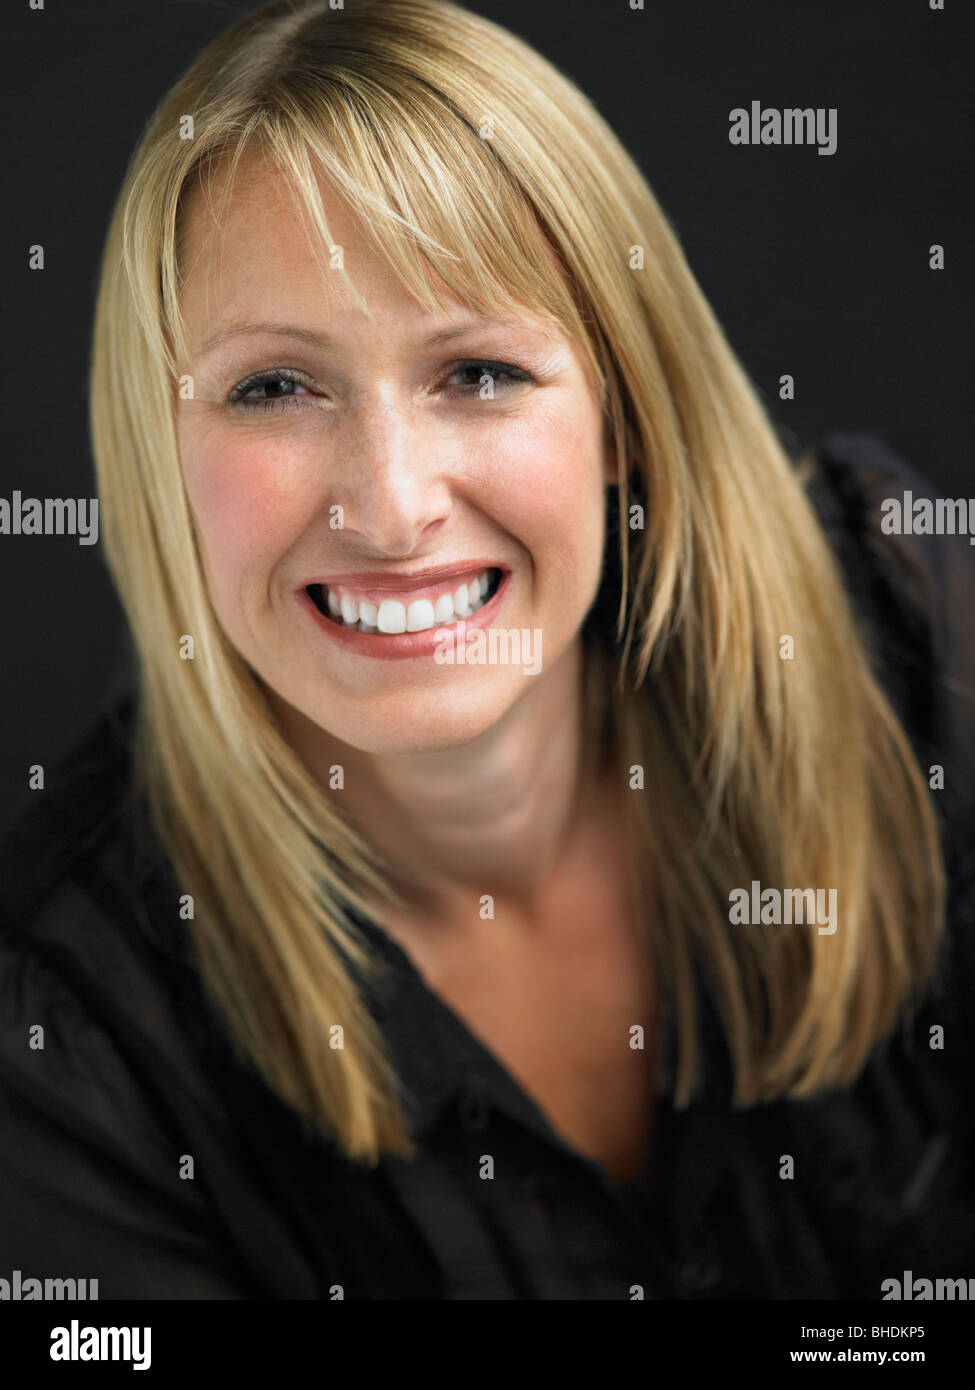 Studio-Porträt der jungen Frau vor schwarzem Hintergrund Stockfoto